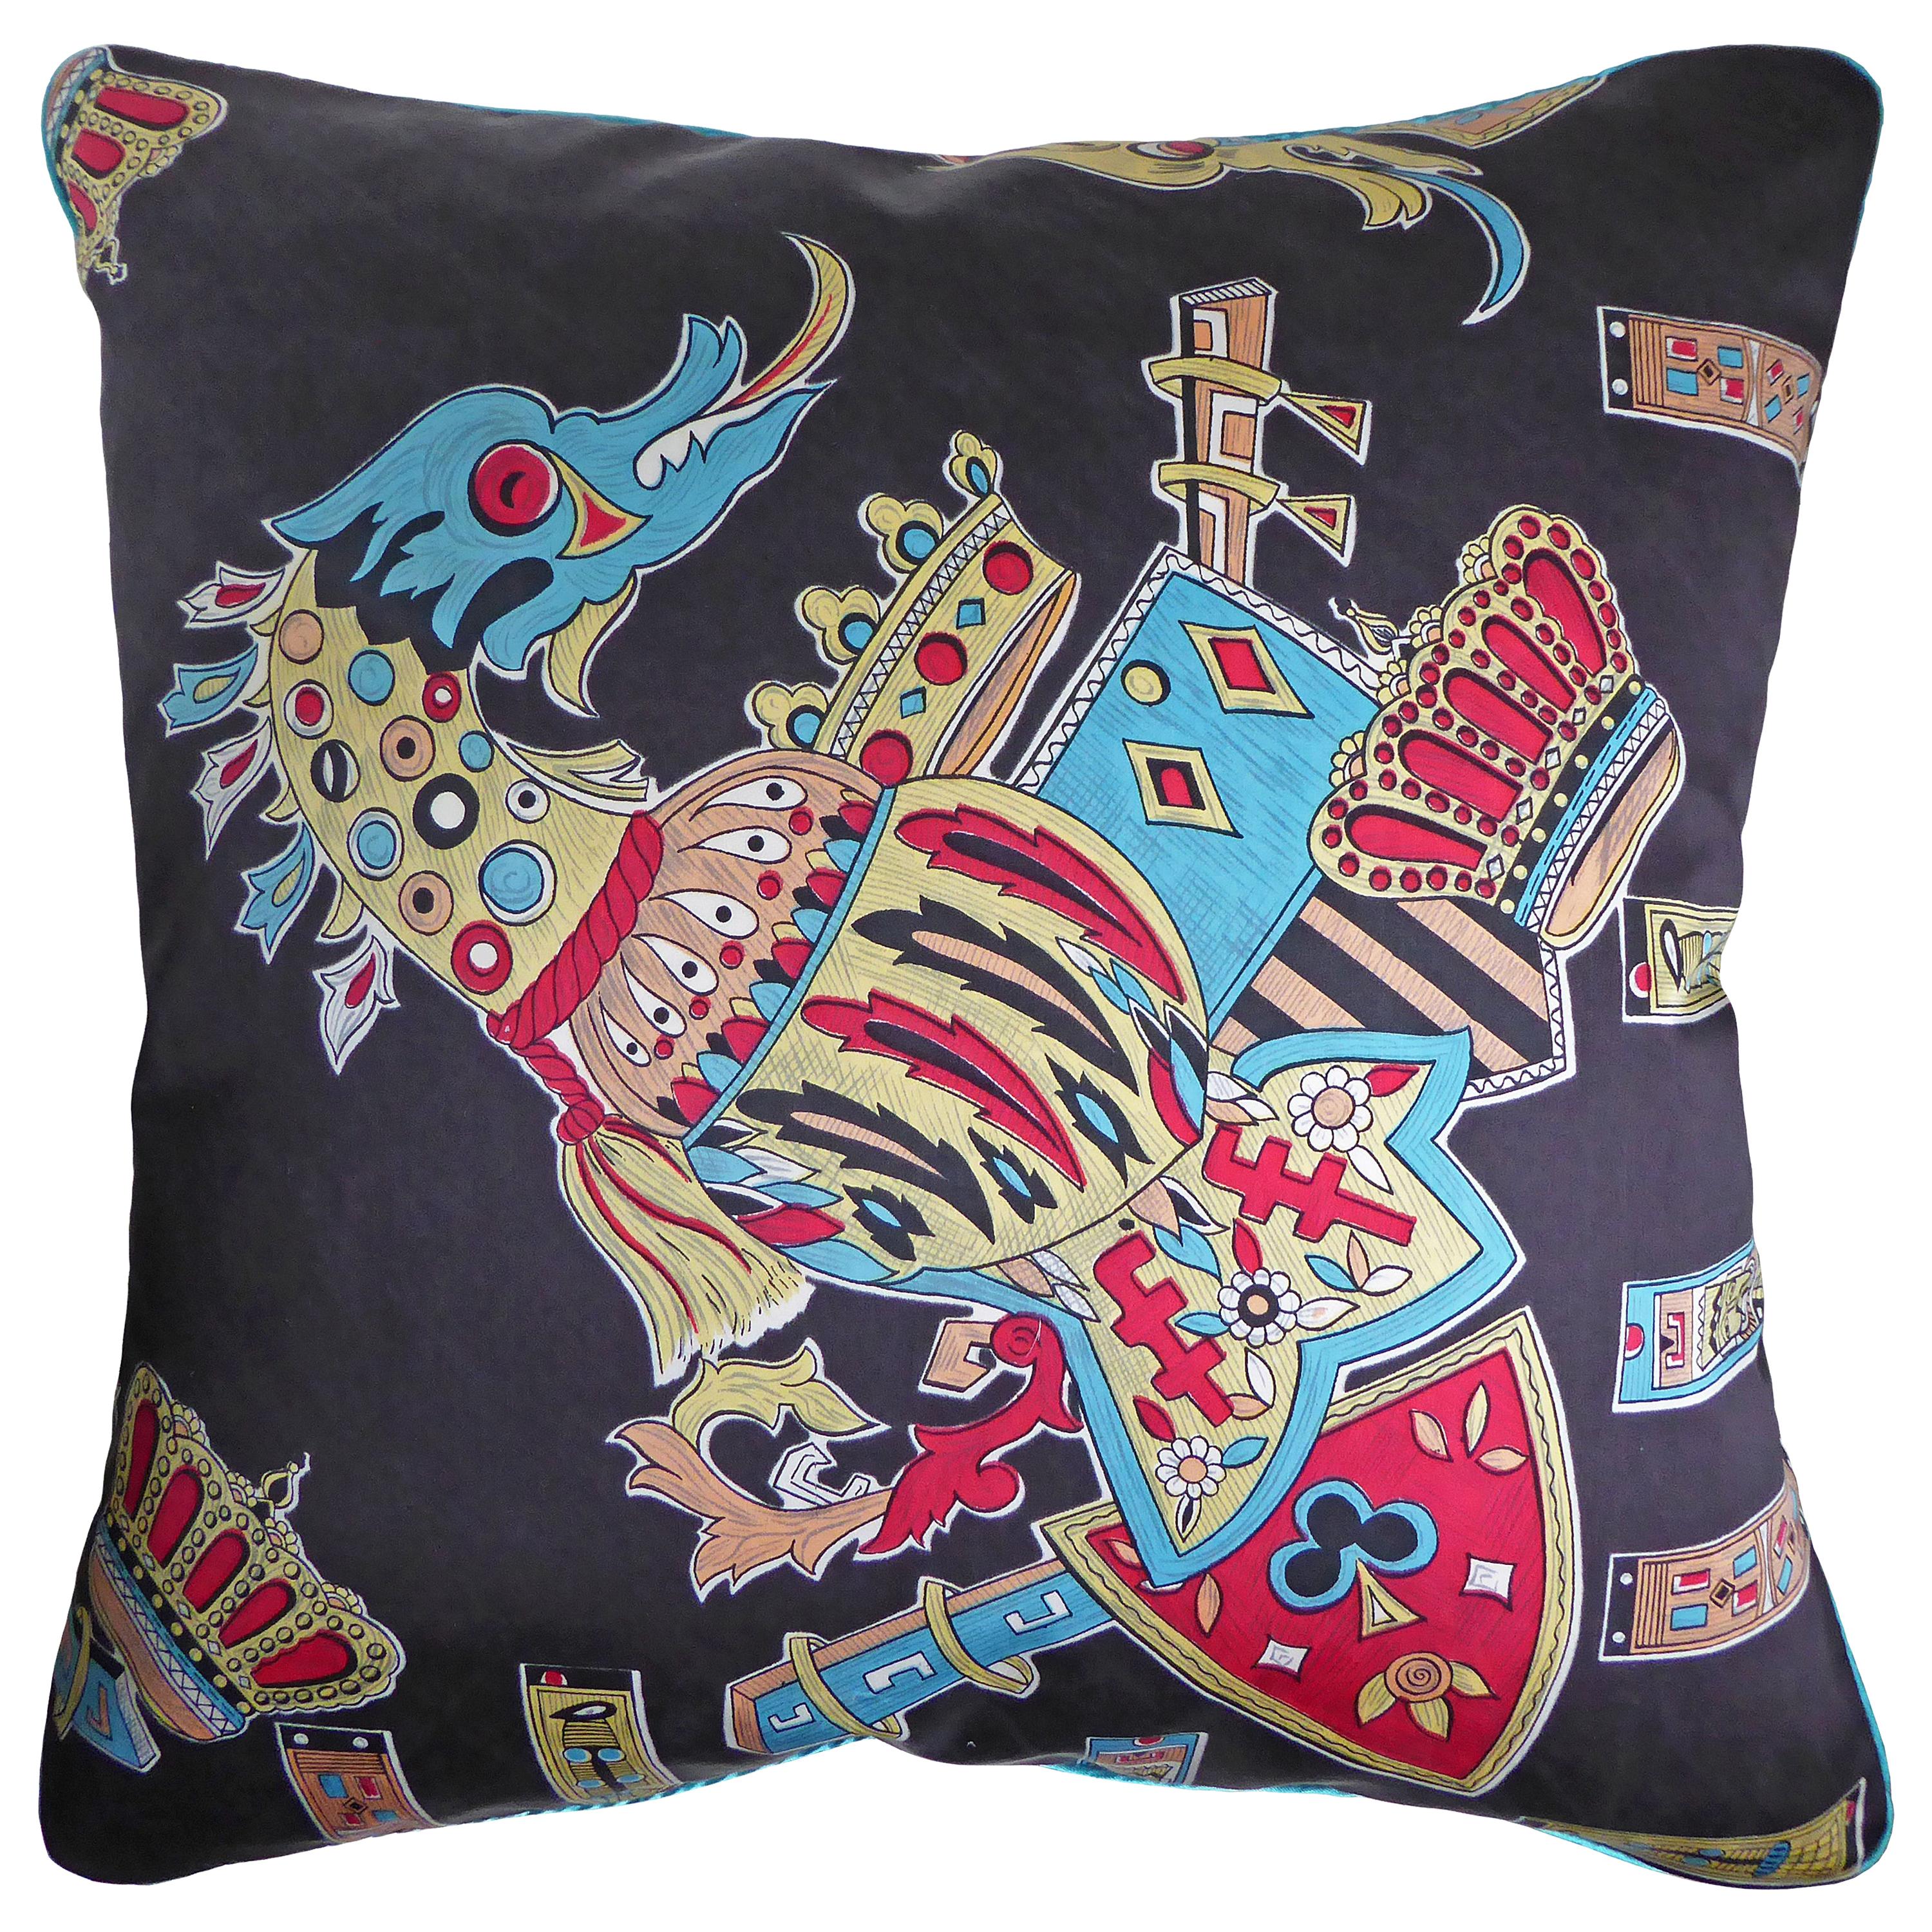 Vintage Cushions, Bespoke-Made Luxury Silk Pillow, 'Fuku Riu Dragon' Made in UK